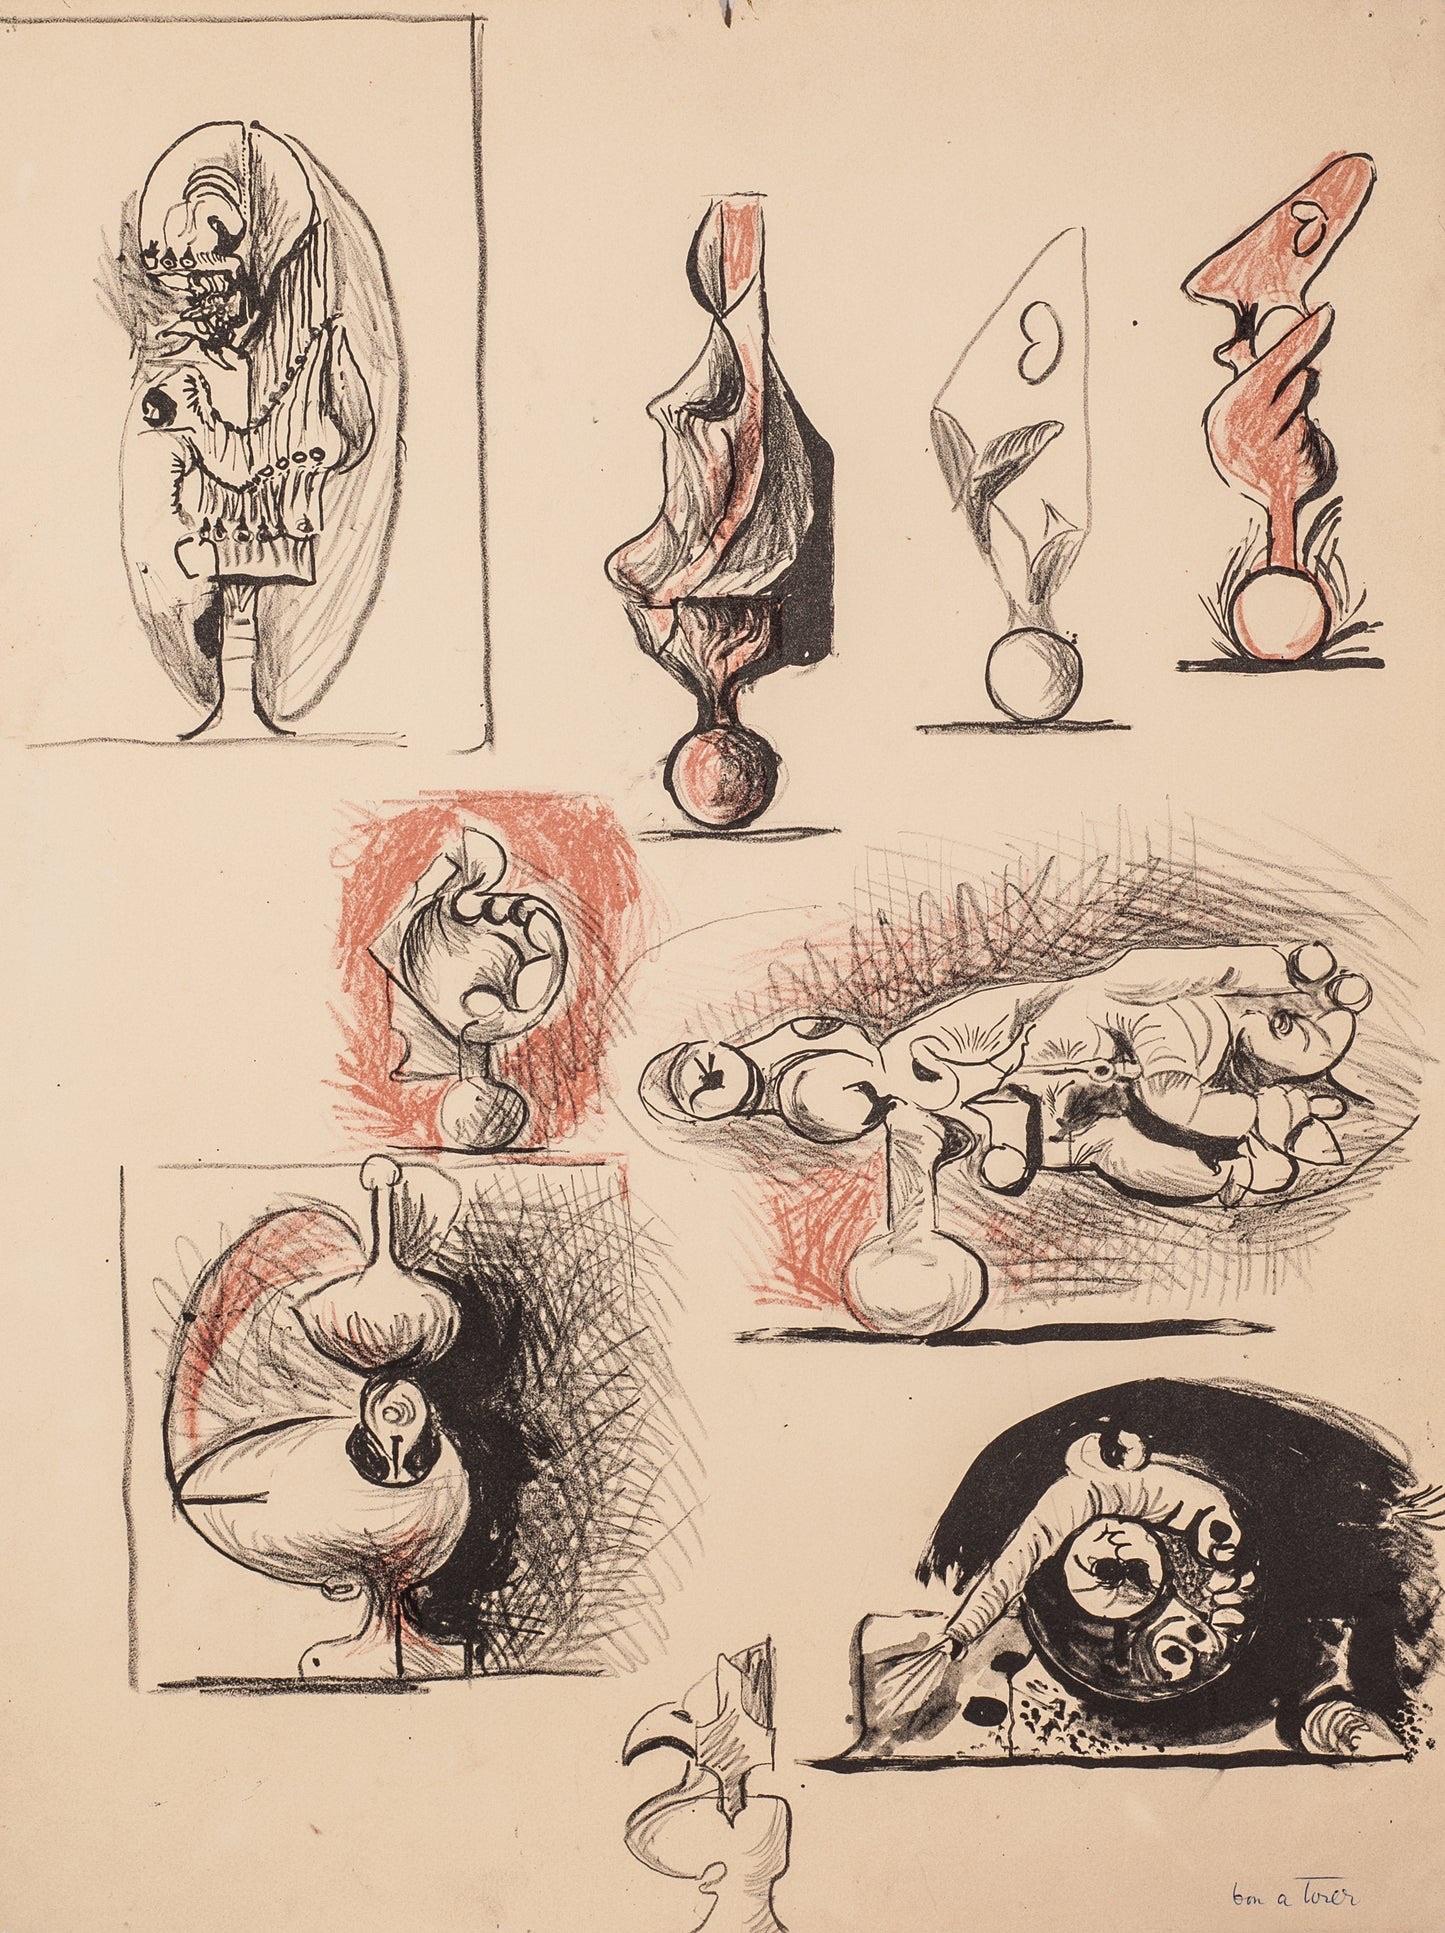 Artiste : Graham Sutherland

Médium : Lithographie originale, tirée du portfolio Un bestiaire et quelques correspondances, B.A.T, 1968 

Dimensions : 26 x 20 in, 66 x 50.8 cm